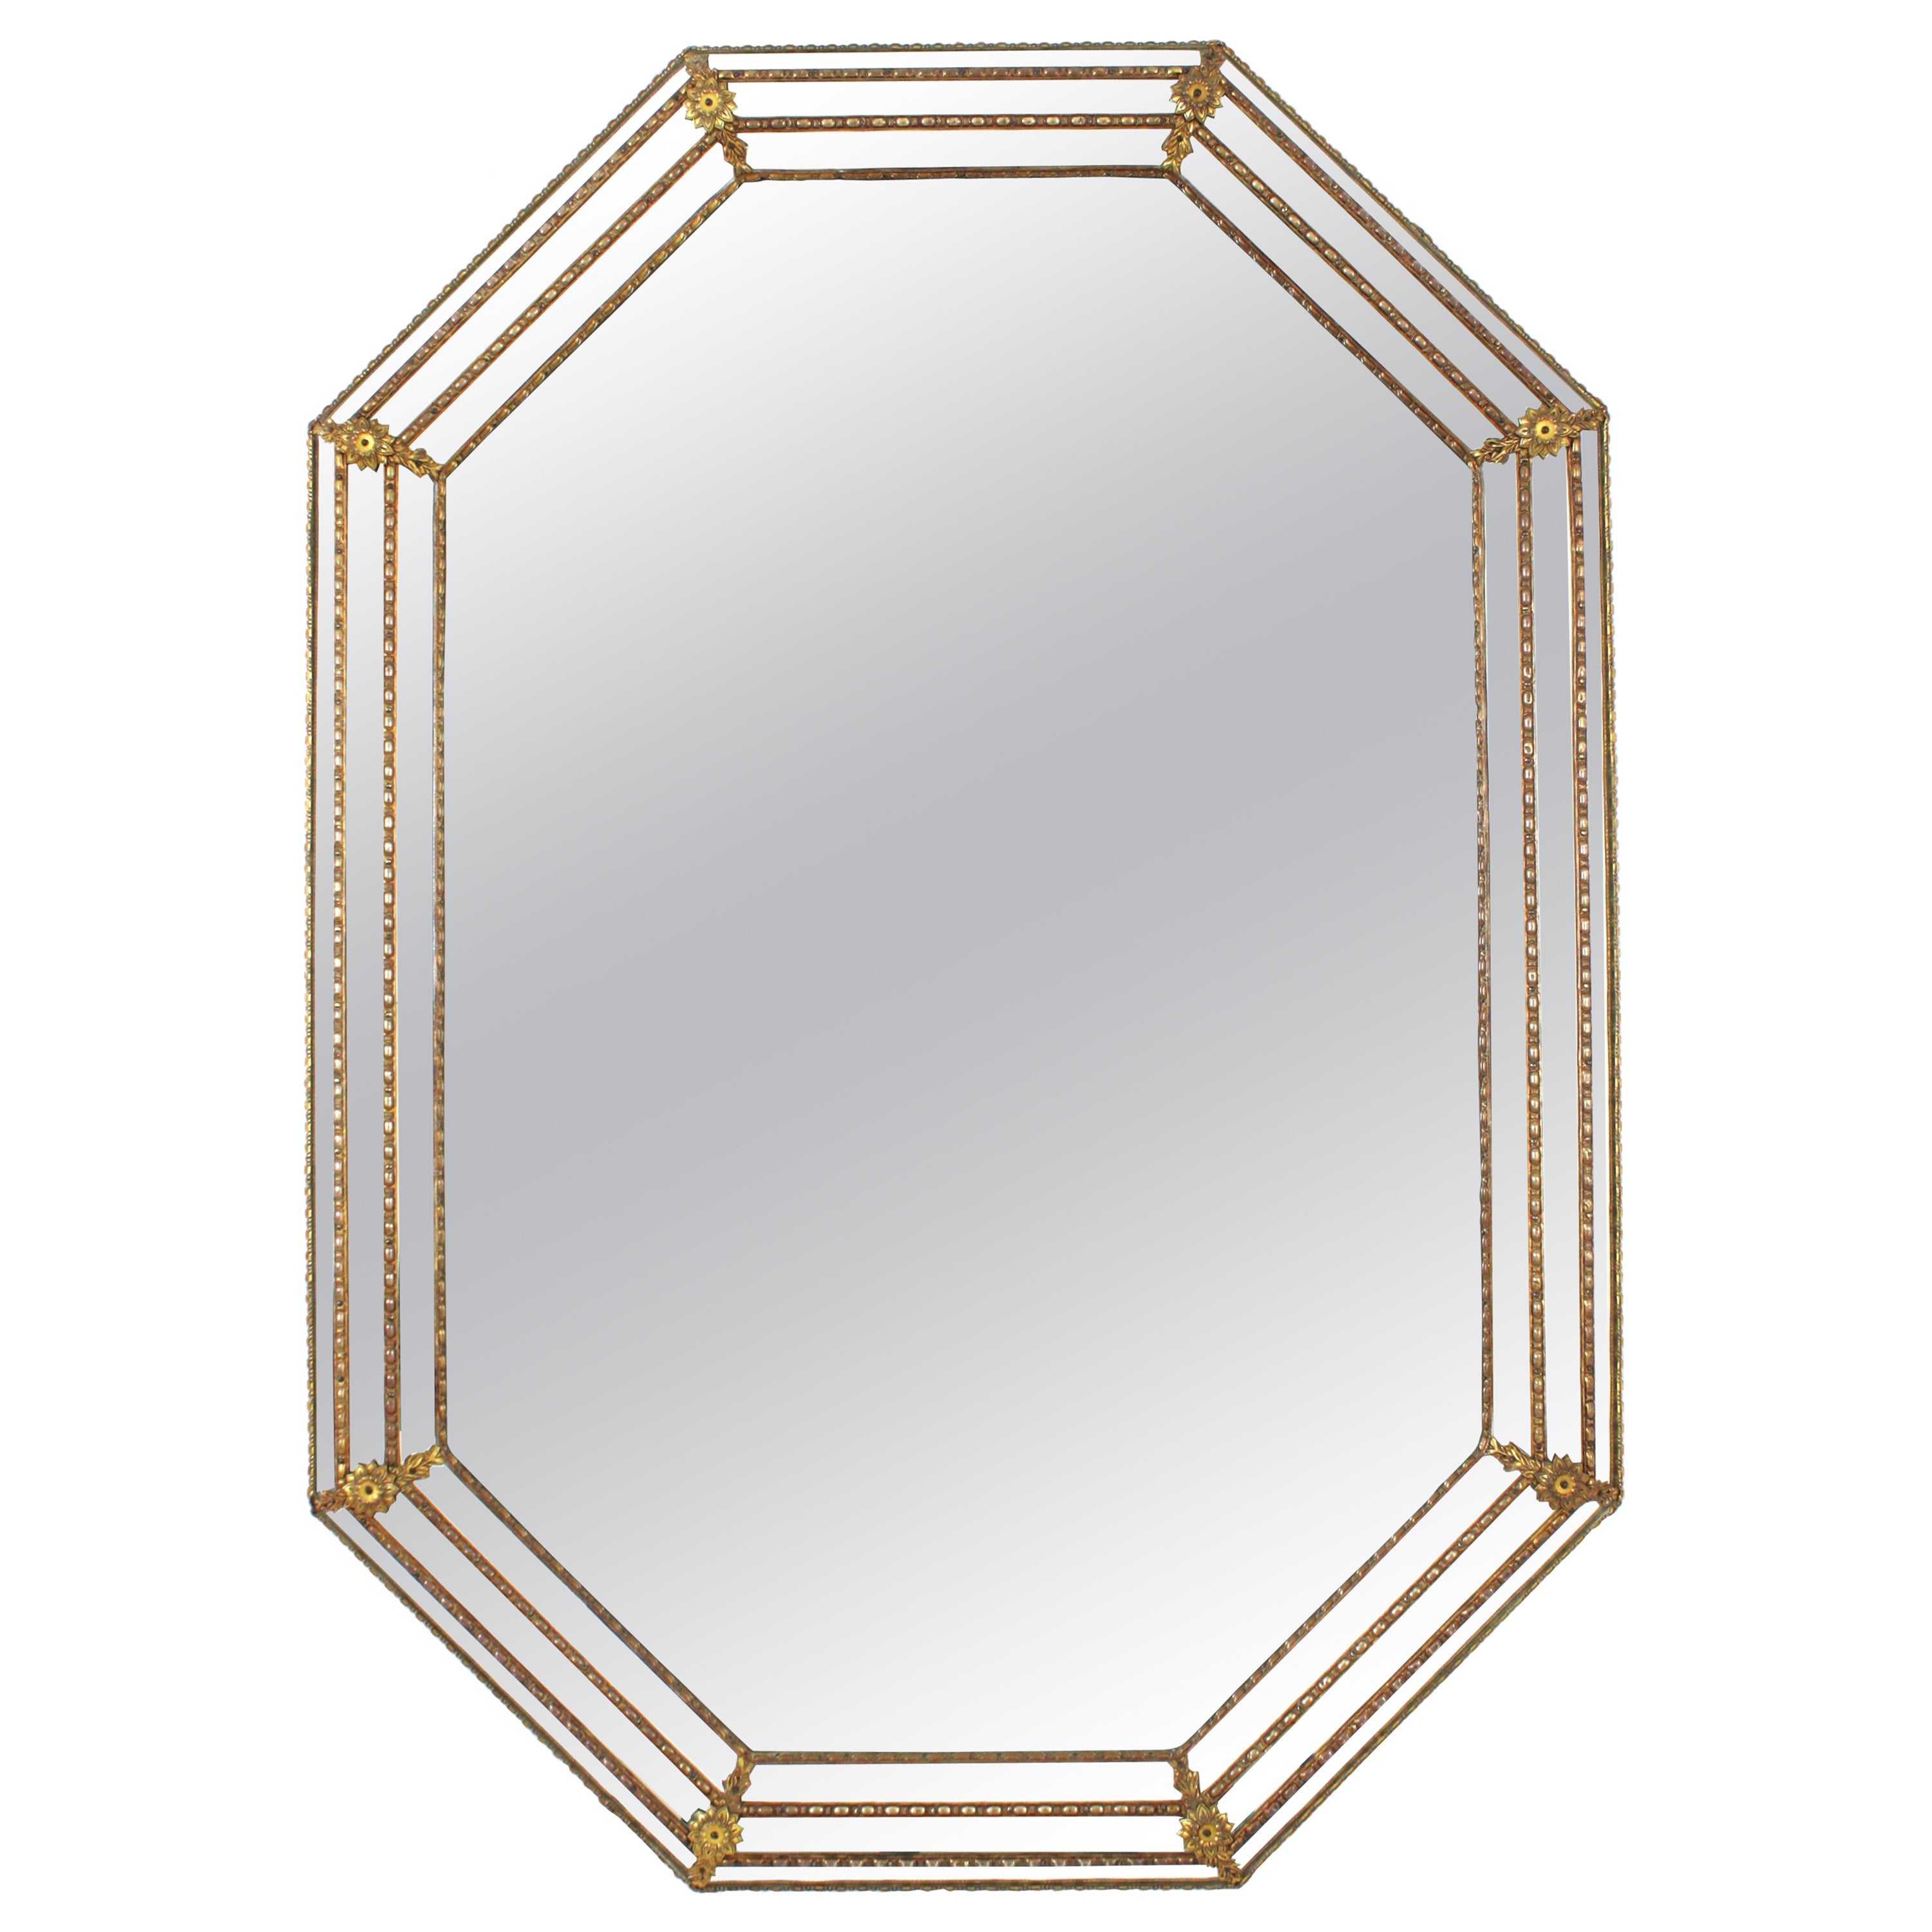 Achteckiger Spiegel im venezianischen Stil mit Details aus Messing